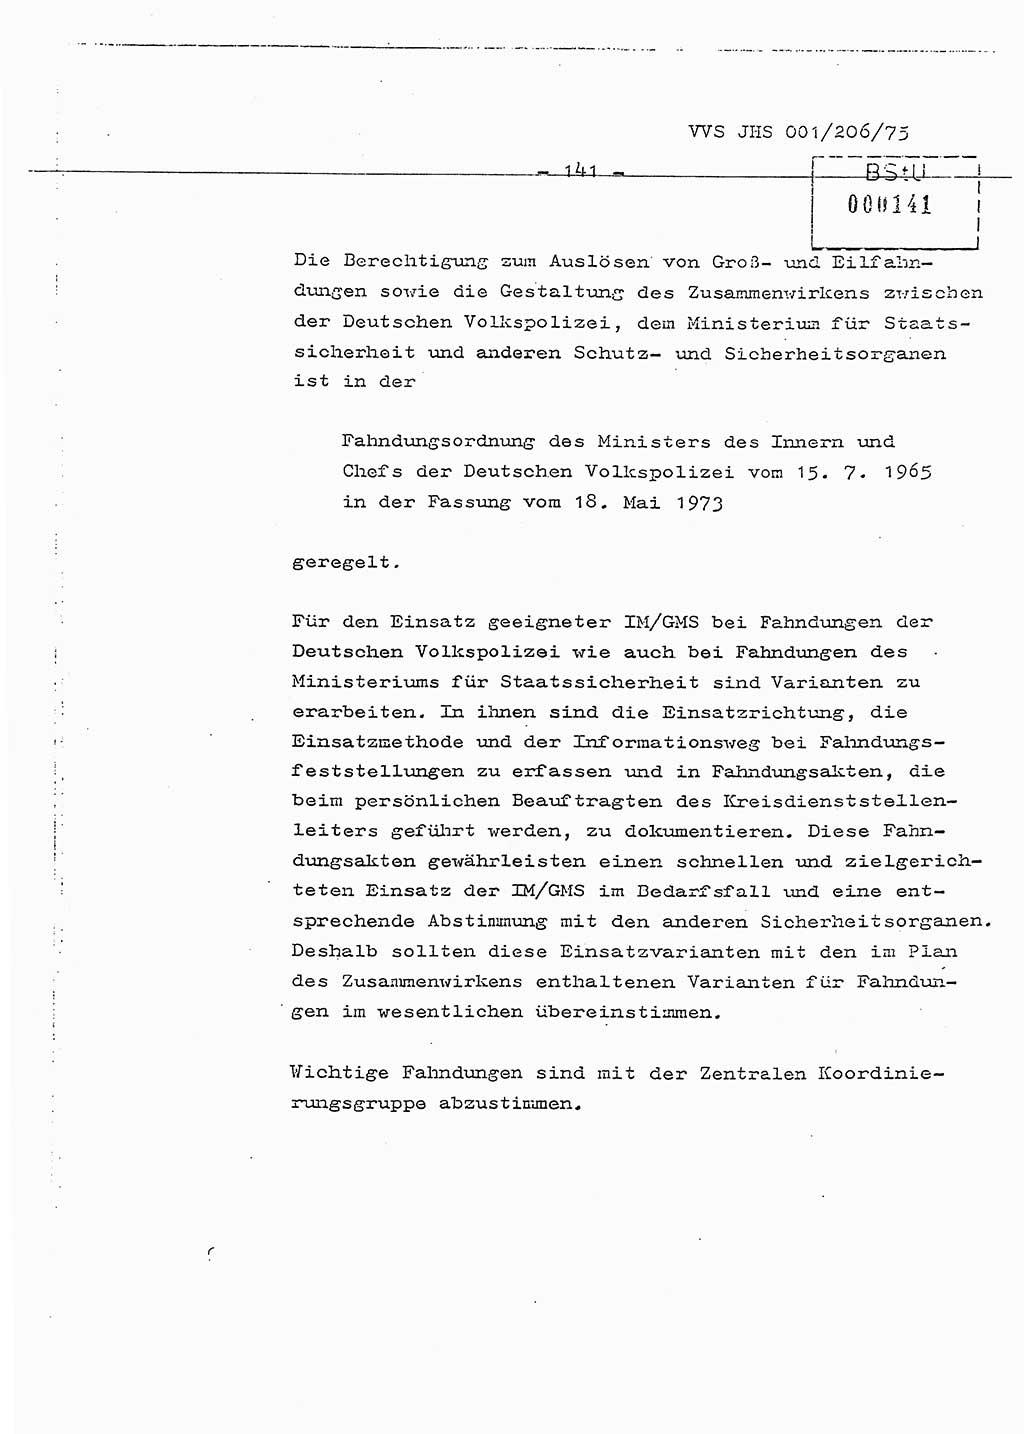 Dissertation Generalmajor Manfred Hummitzsch (Leiter der BV Leipzig), Generalmajor Heinz Fiedler (HA Ⅵ), Oberst Rolf Fister (HA Ⅸ), Ministerium für Staatssicherheit (MfS) [Deutsche Demokratische Republik (DDR)], Juristische Hochschule (JHS), Vertrauliche Verschlußsache (VVS) 001-206/75, Potsdam 1975, Seite 141 (Diss. MfS DDR JHS VVS 001-206/75 1975, S. 141)